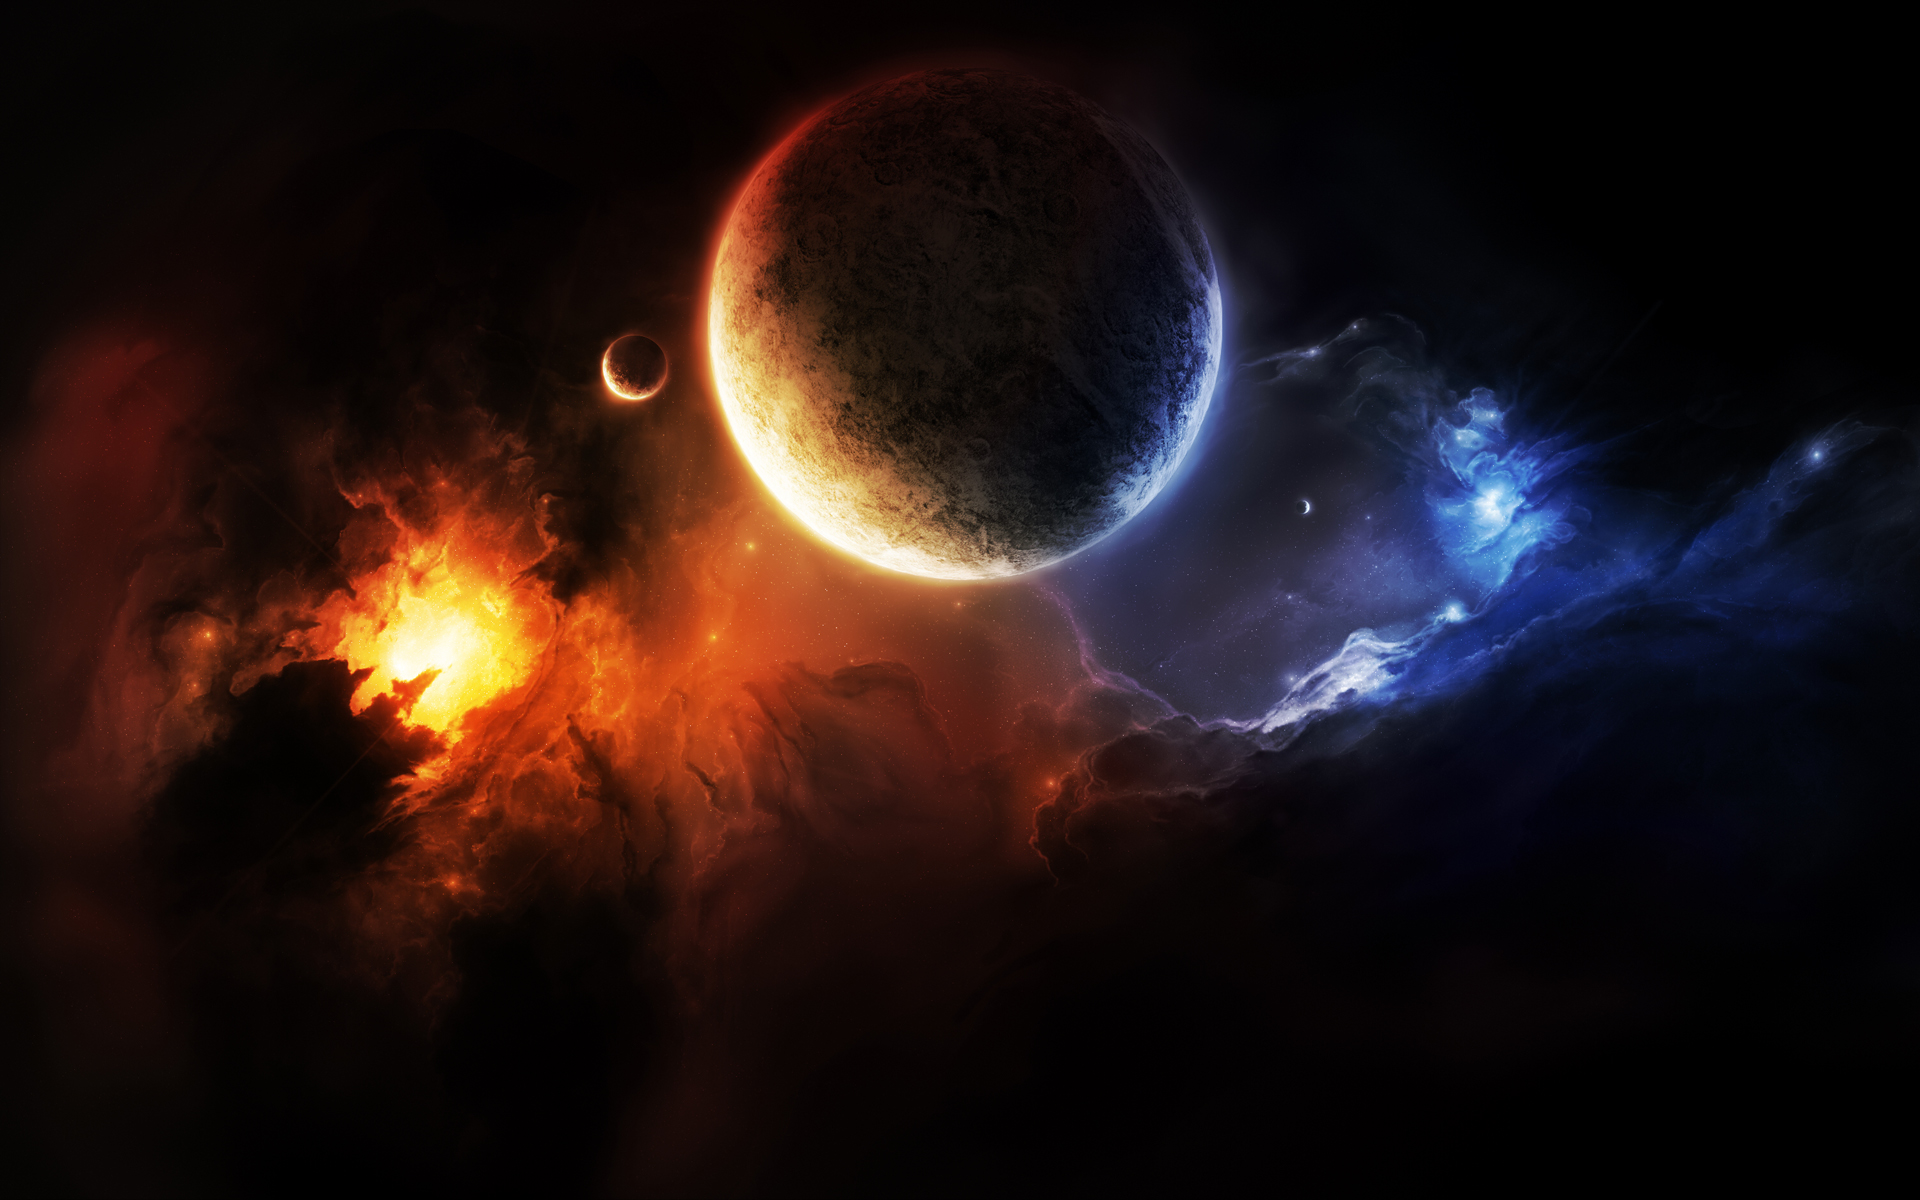 pianeta wallpaper hd,spazio,natura,atmosfera,oggetto astronomico,universo